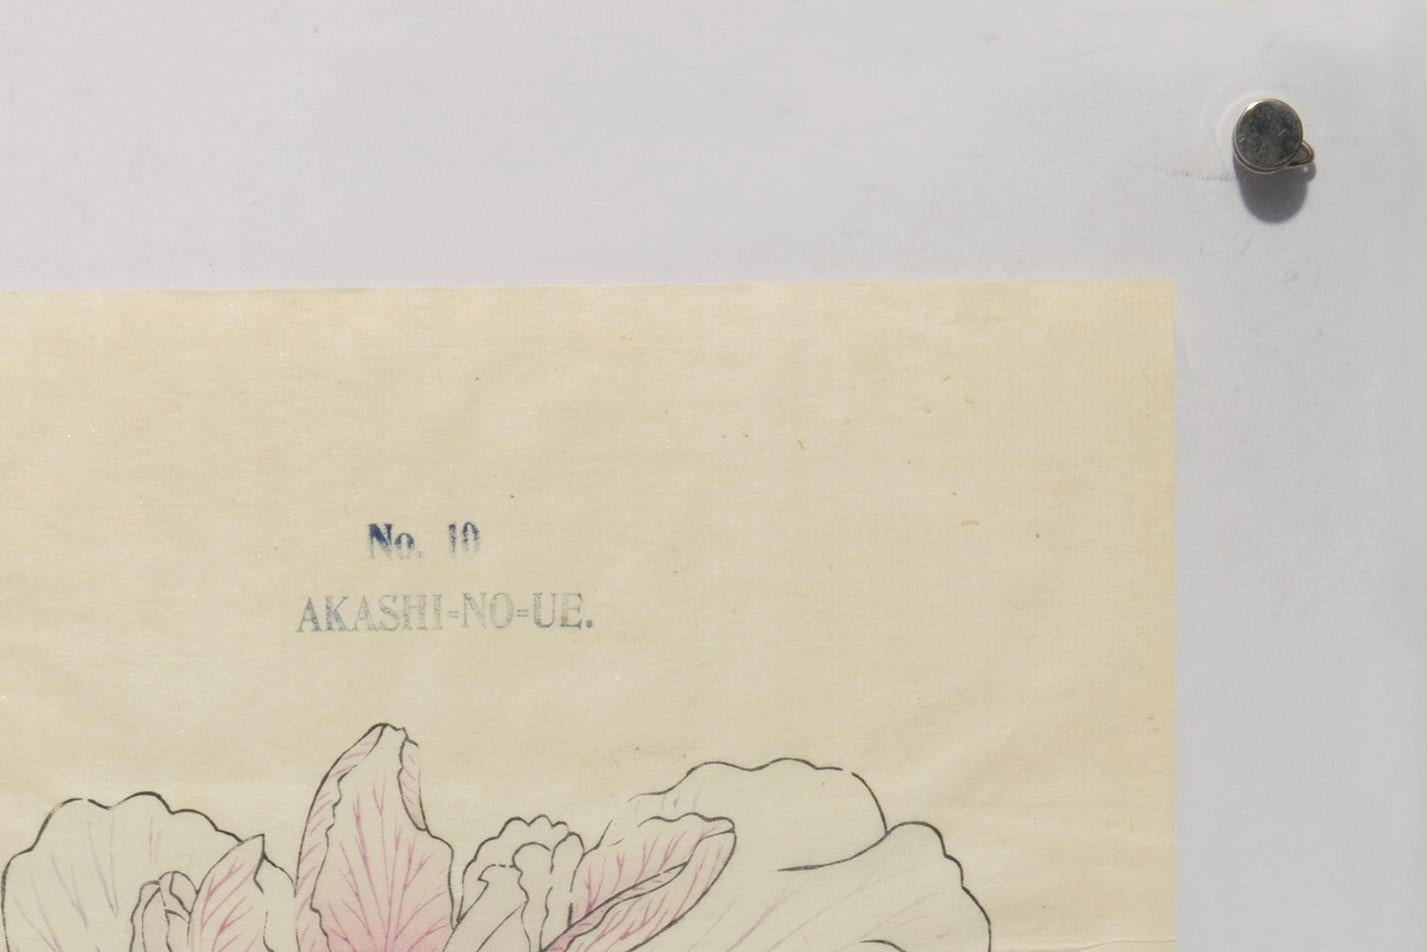 Iris Kaempferi : N° 10 AKASHI-NO-UE 
Tokyo, jardin Yoshinoen, vers 1910.
Gravure sur bois colorée à la main sur papier de riz fait main, numérotée et légendée en haut,  souligné à l'encre.  Encadré dans du plexiglas. Taille totale : 49 x 36,7 cm.